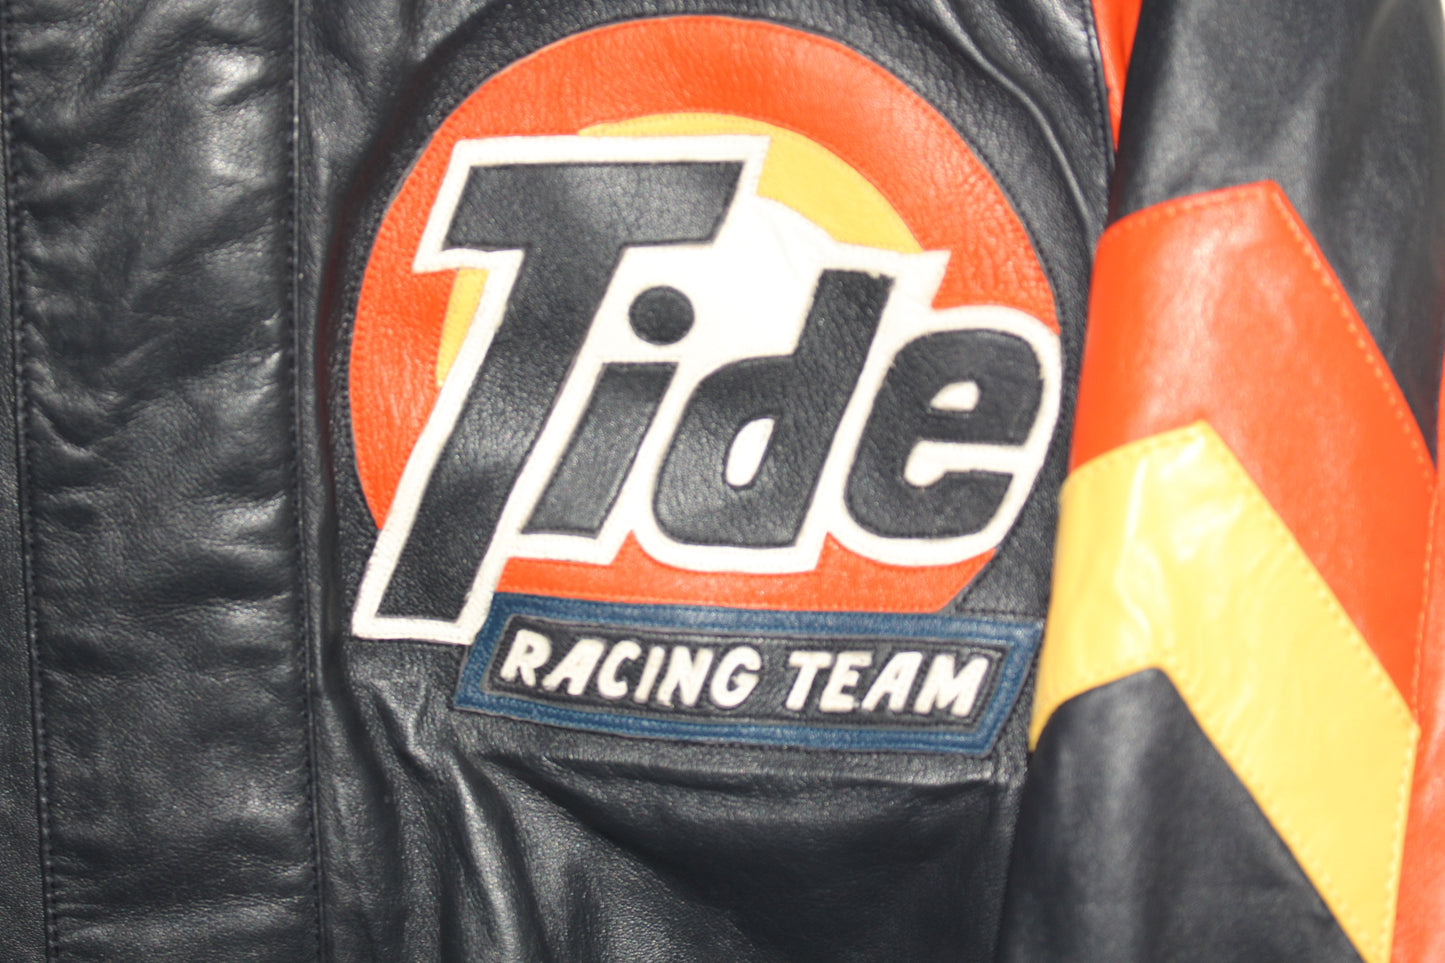 Rare Tide Racing NASCAR Ricky Rudd #10 Leather Jacket (L)